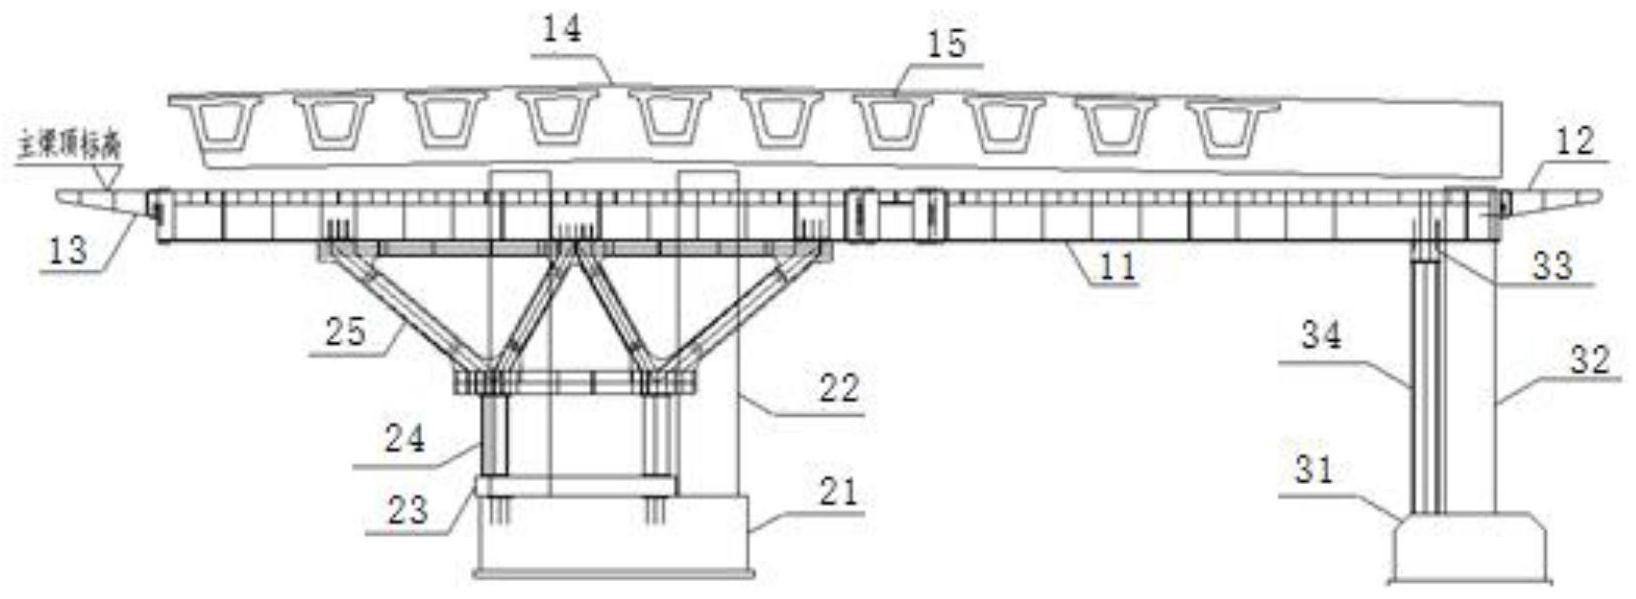 cn113152283a_路桥预制小箱梁式隐盖梁的悬臂或大胯径支承体系的施工